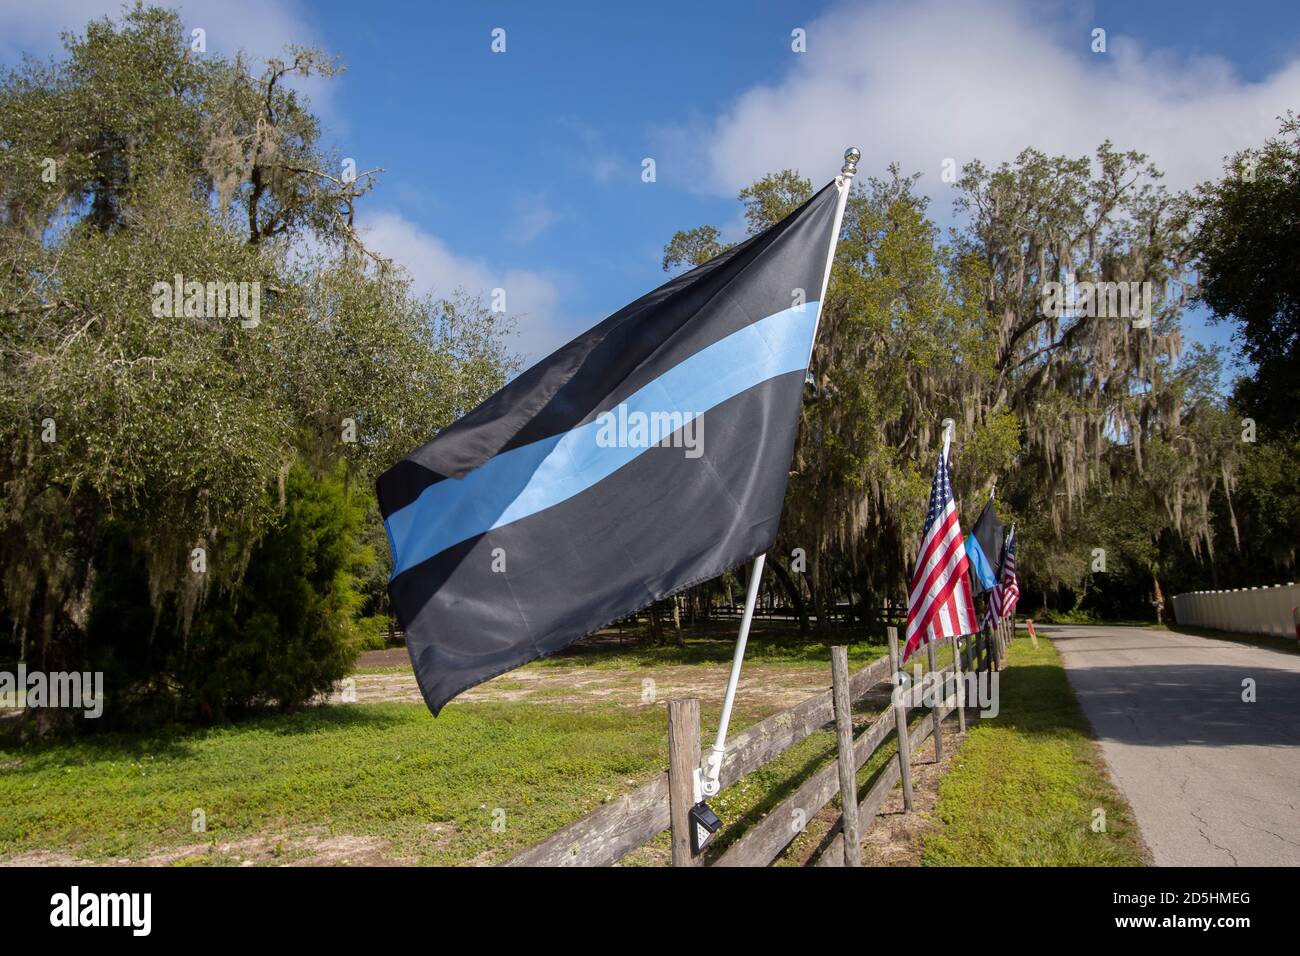 Blue Lives Matter drapeau alias police Thin Blue Line drapeau, agitant dans la brise pour soutenir la police. Banque D'Images